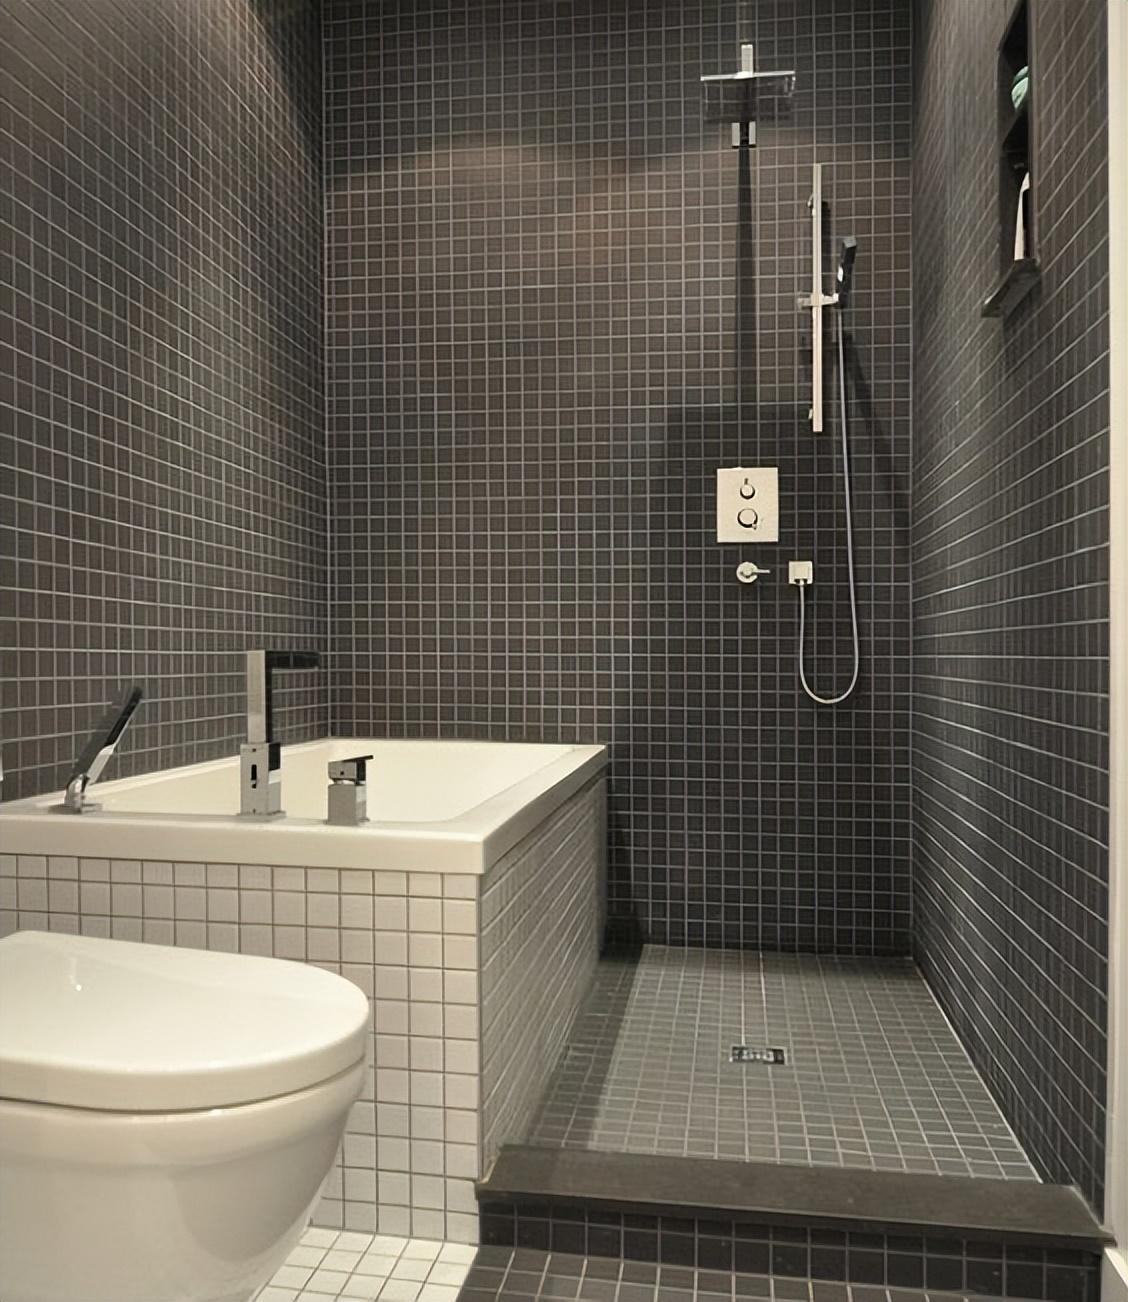 Phòng tắm quá nhỏ, làm sao để bạn có thể tách biệt khu khô và ướt? 4 thiết kế dưới đây sẽ giúp bạn- Ảnh 4.